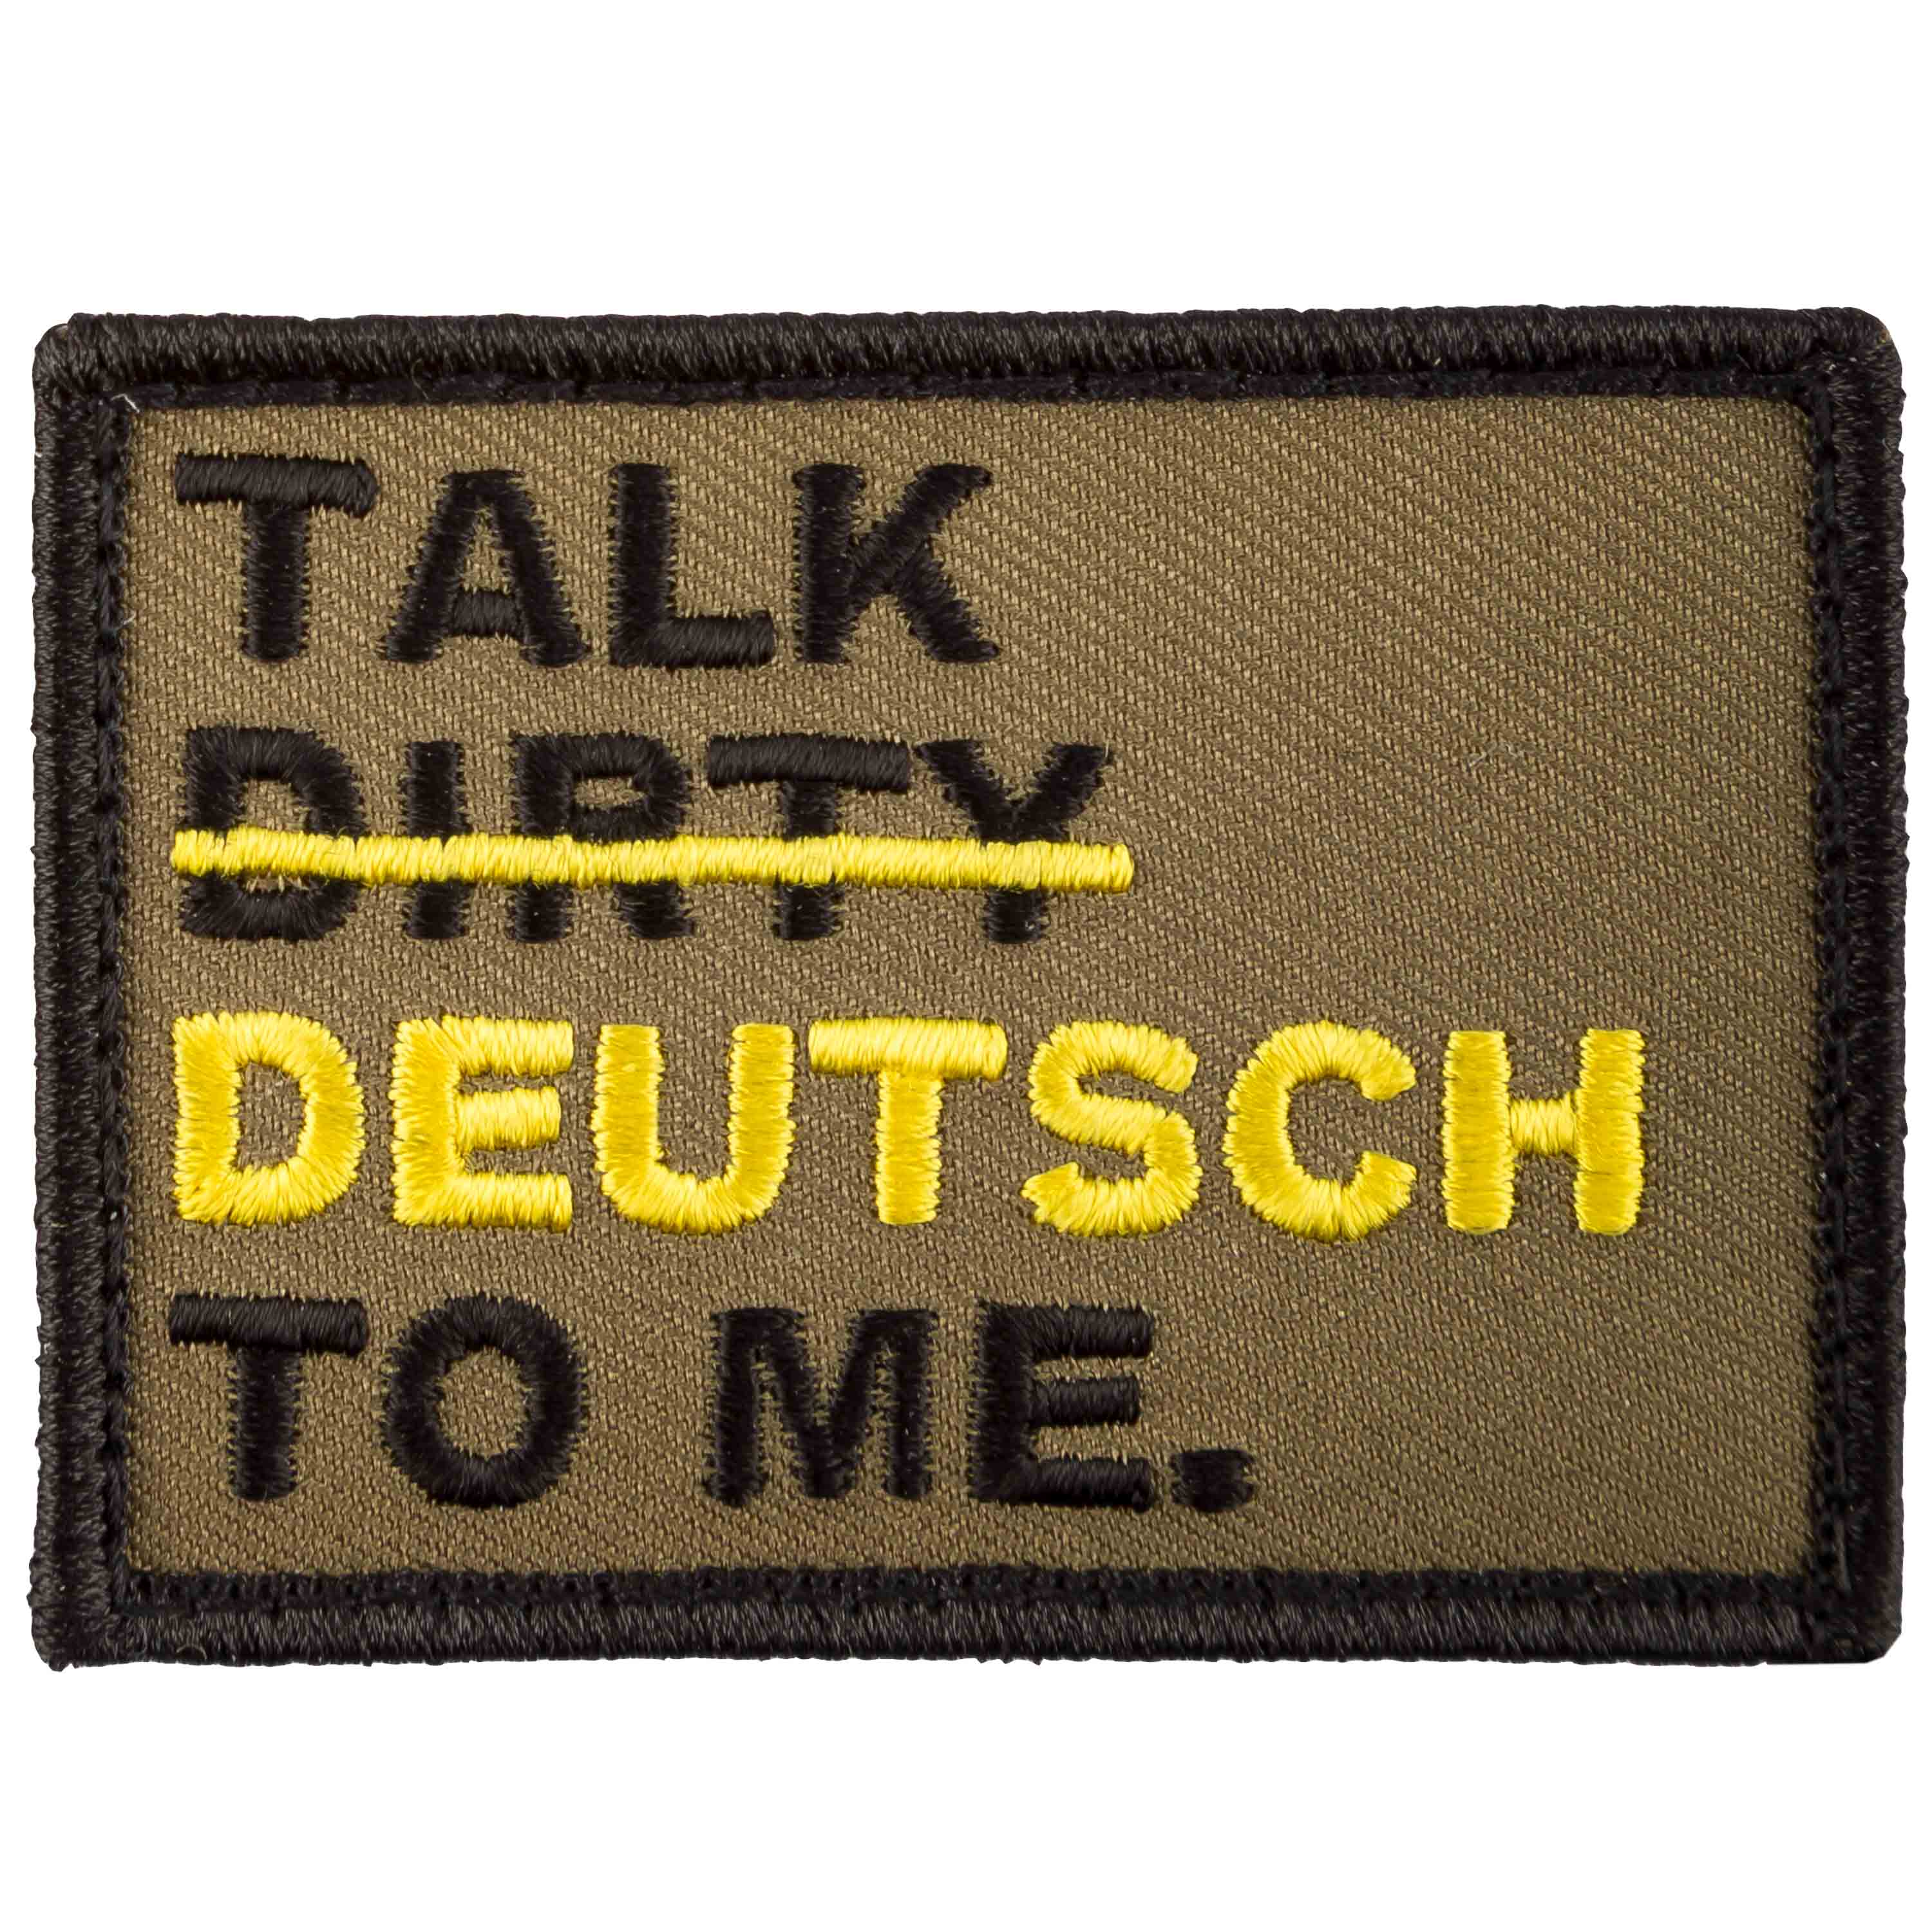 Dity talk deutsch